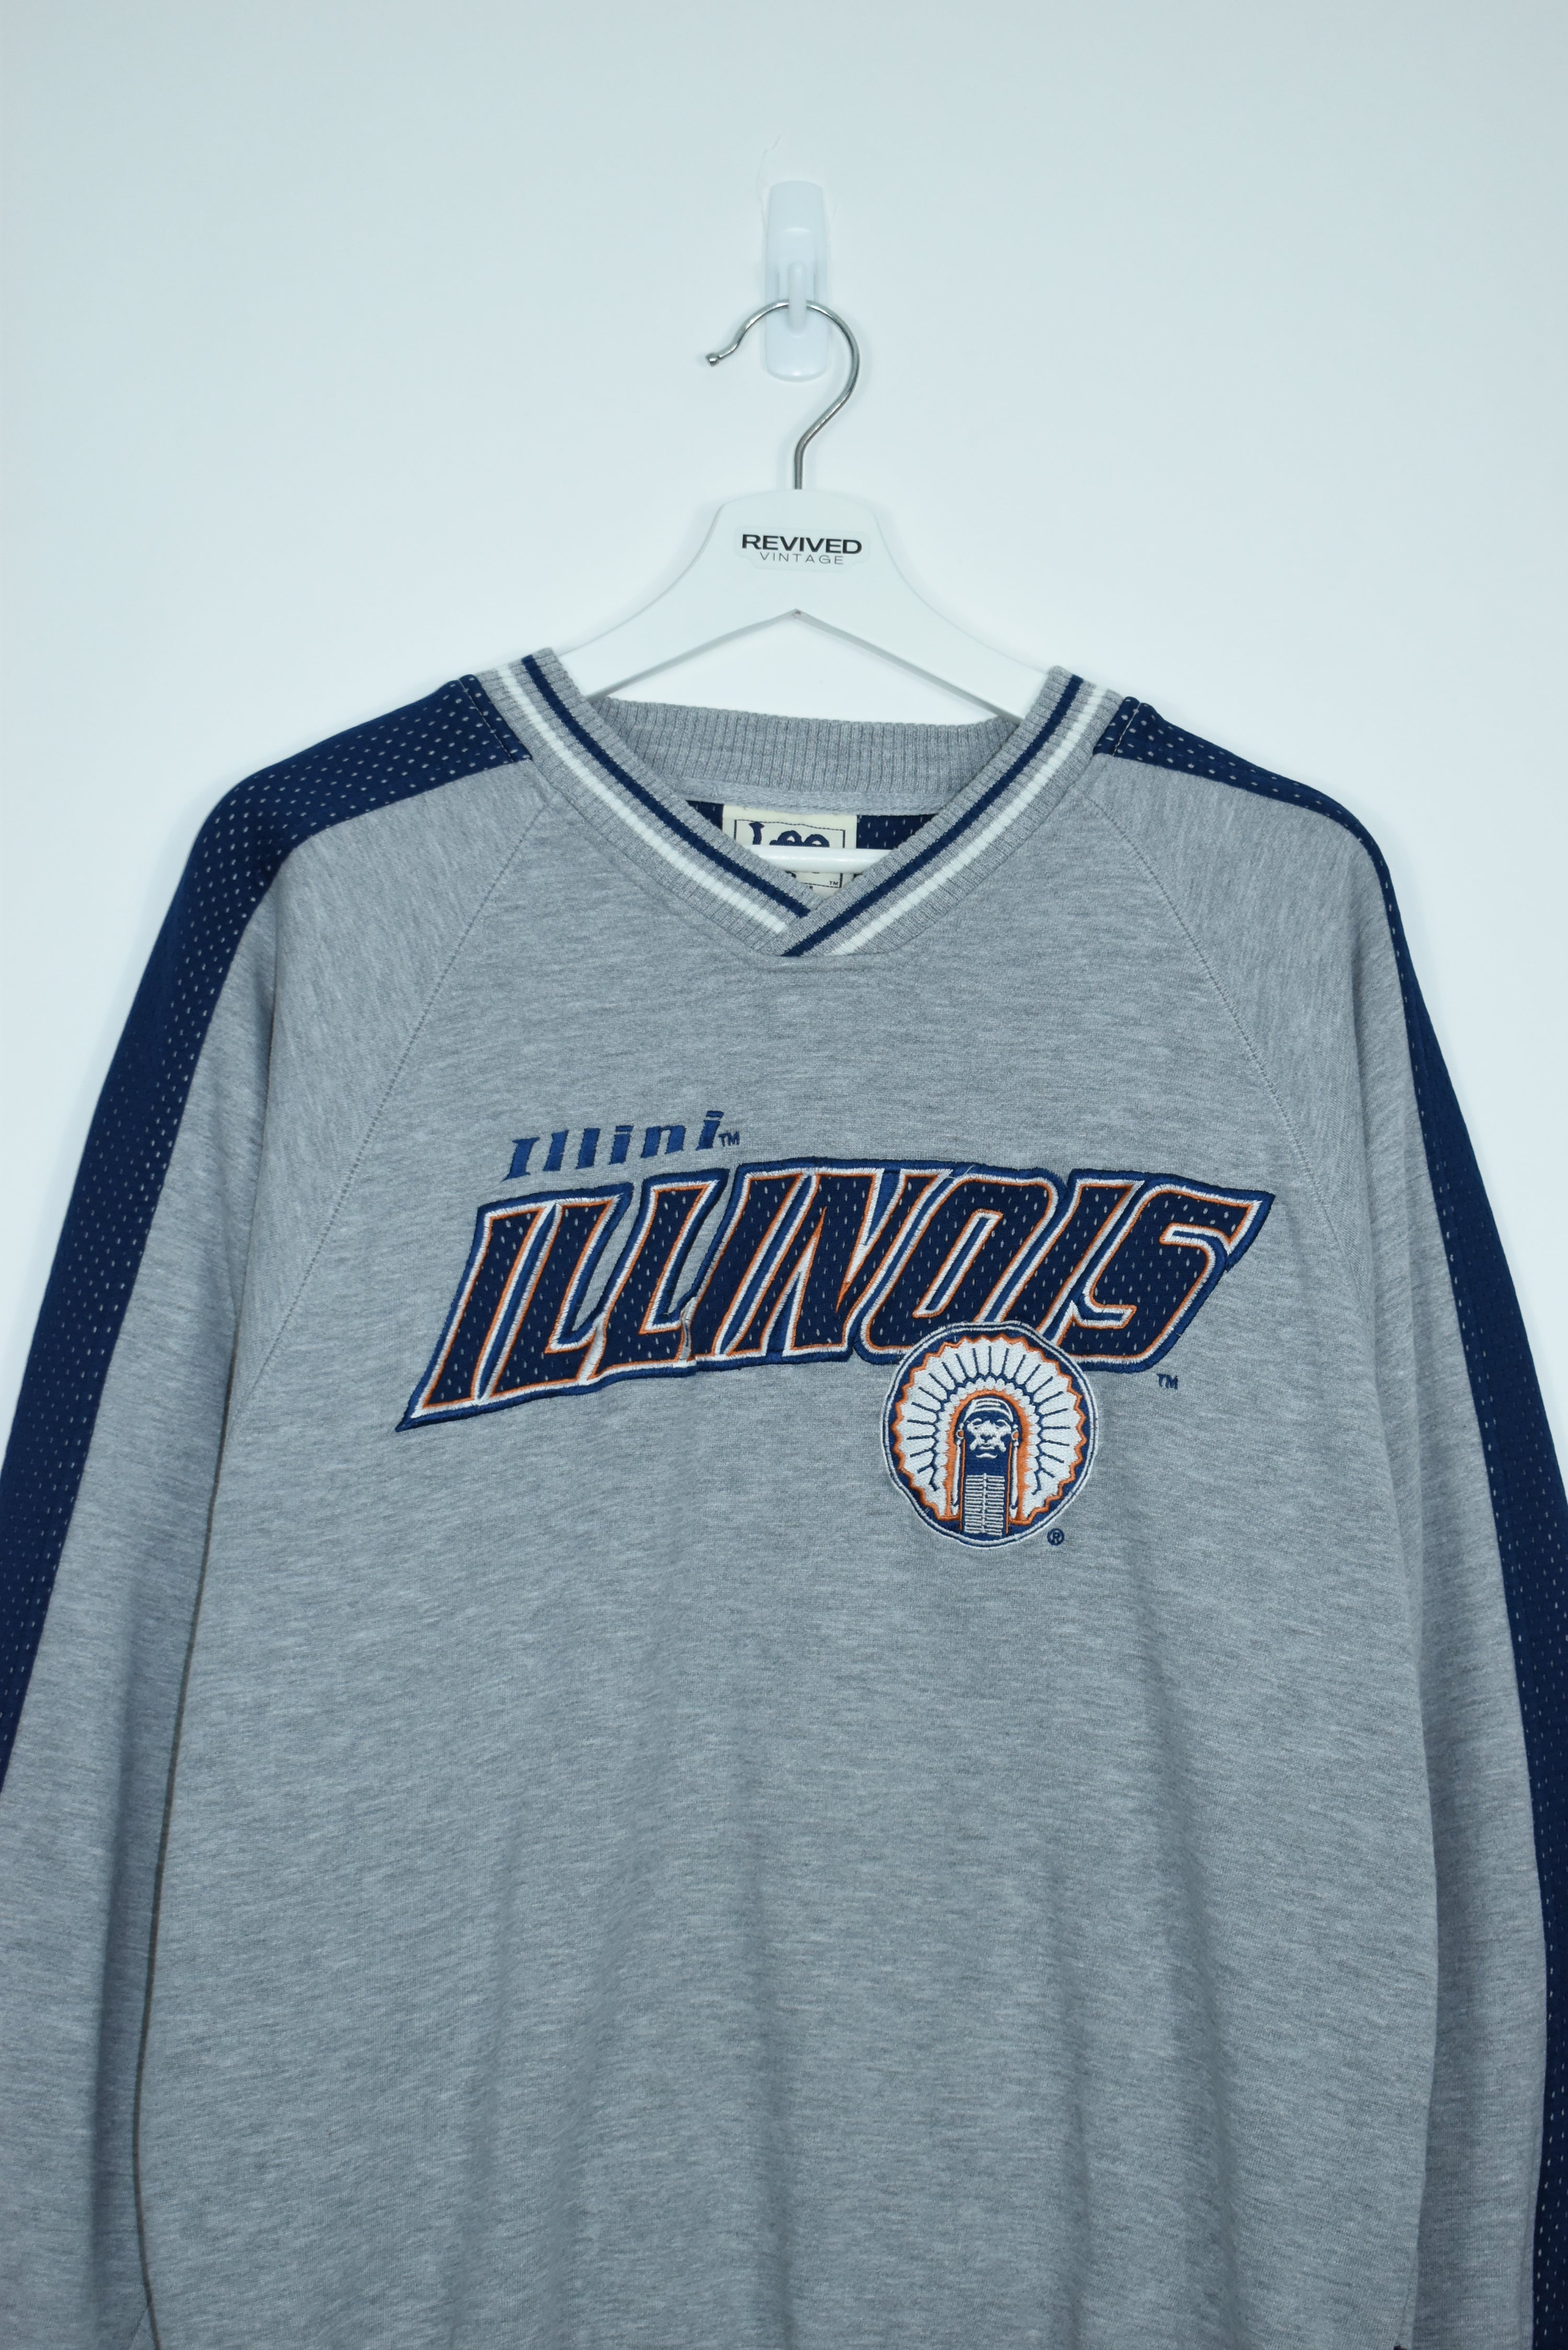 Vintage Illinois Embroidery Sweatshirt Medium